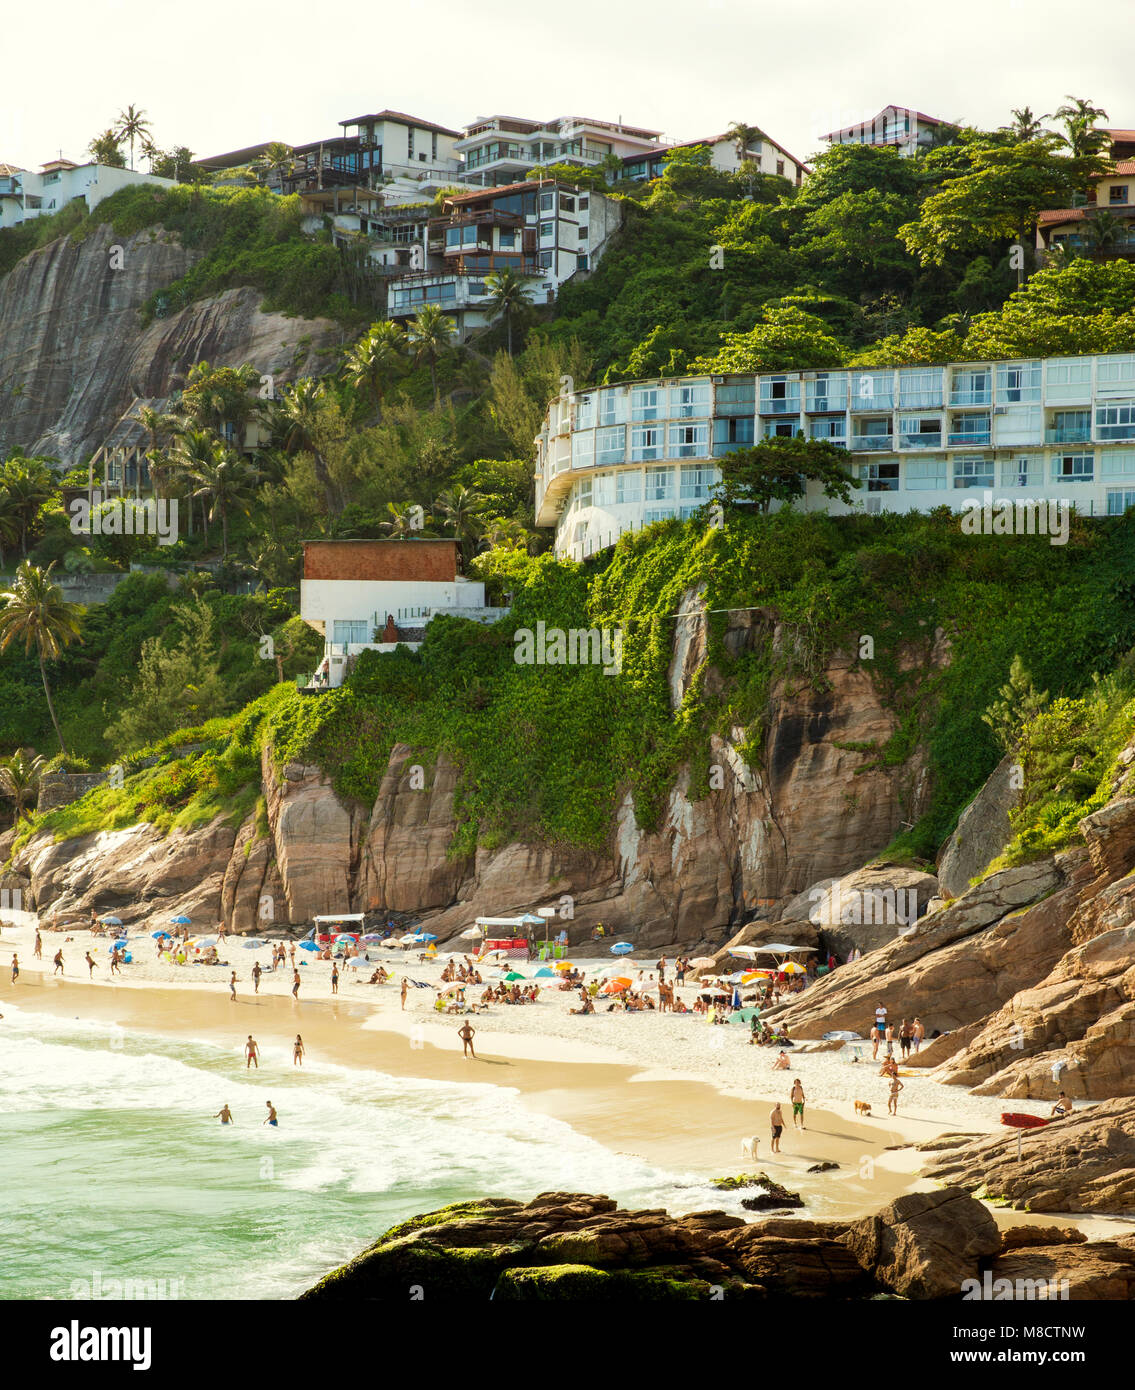 Idyllic tropical beach in Rio de Janeiro, Brazil Stock Photo